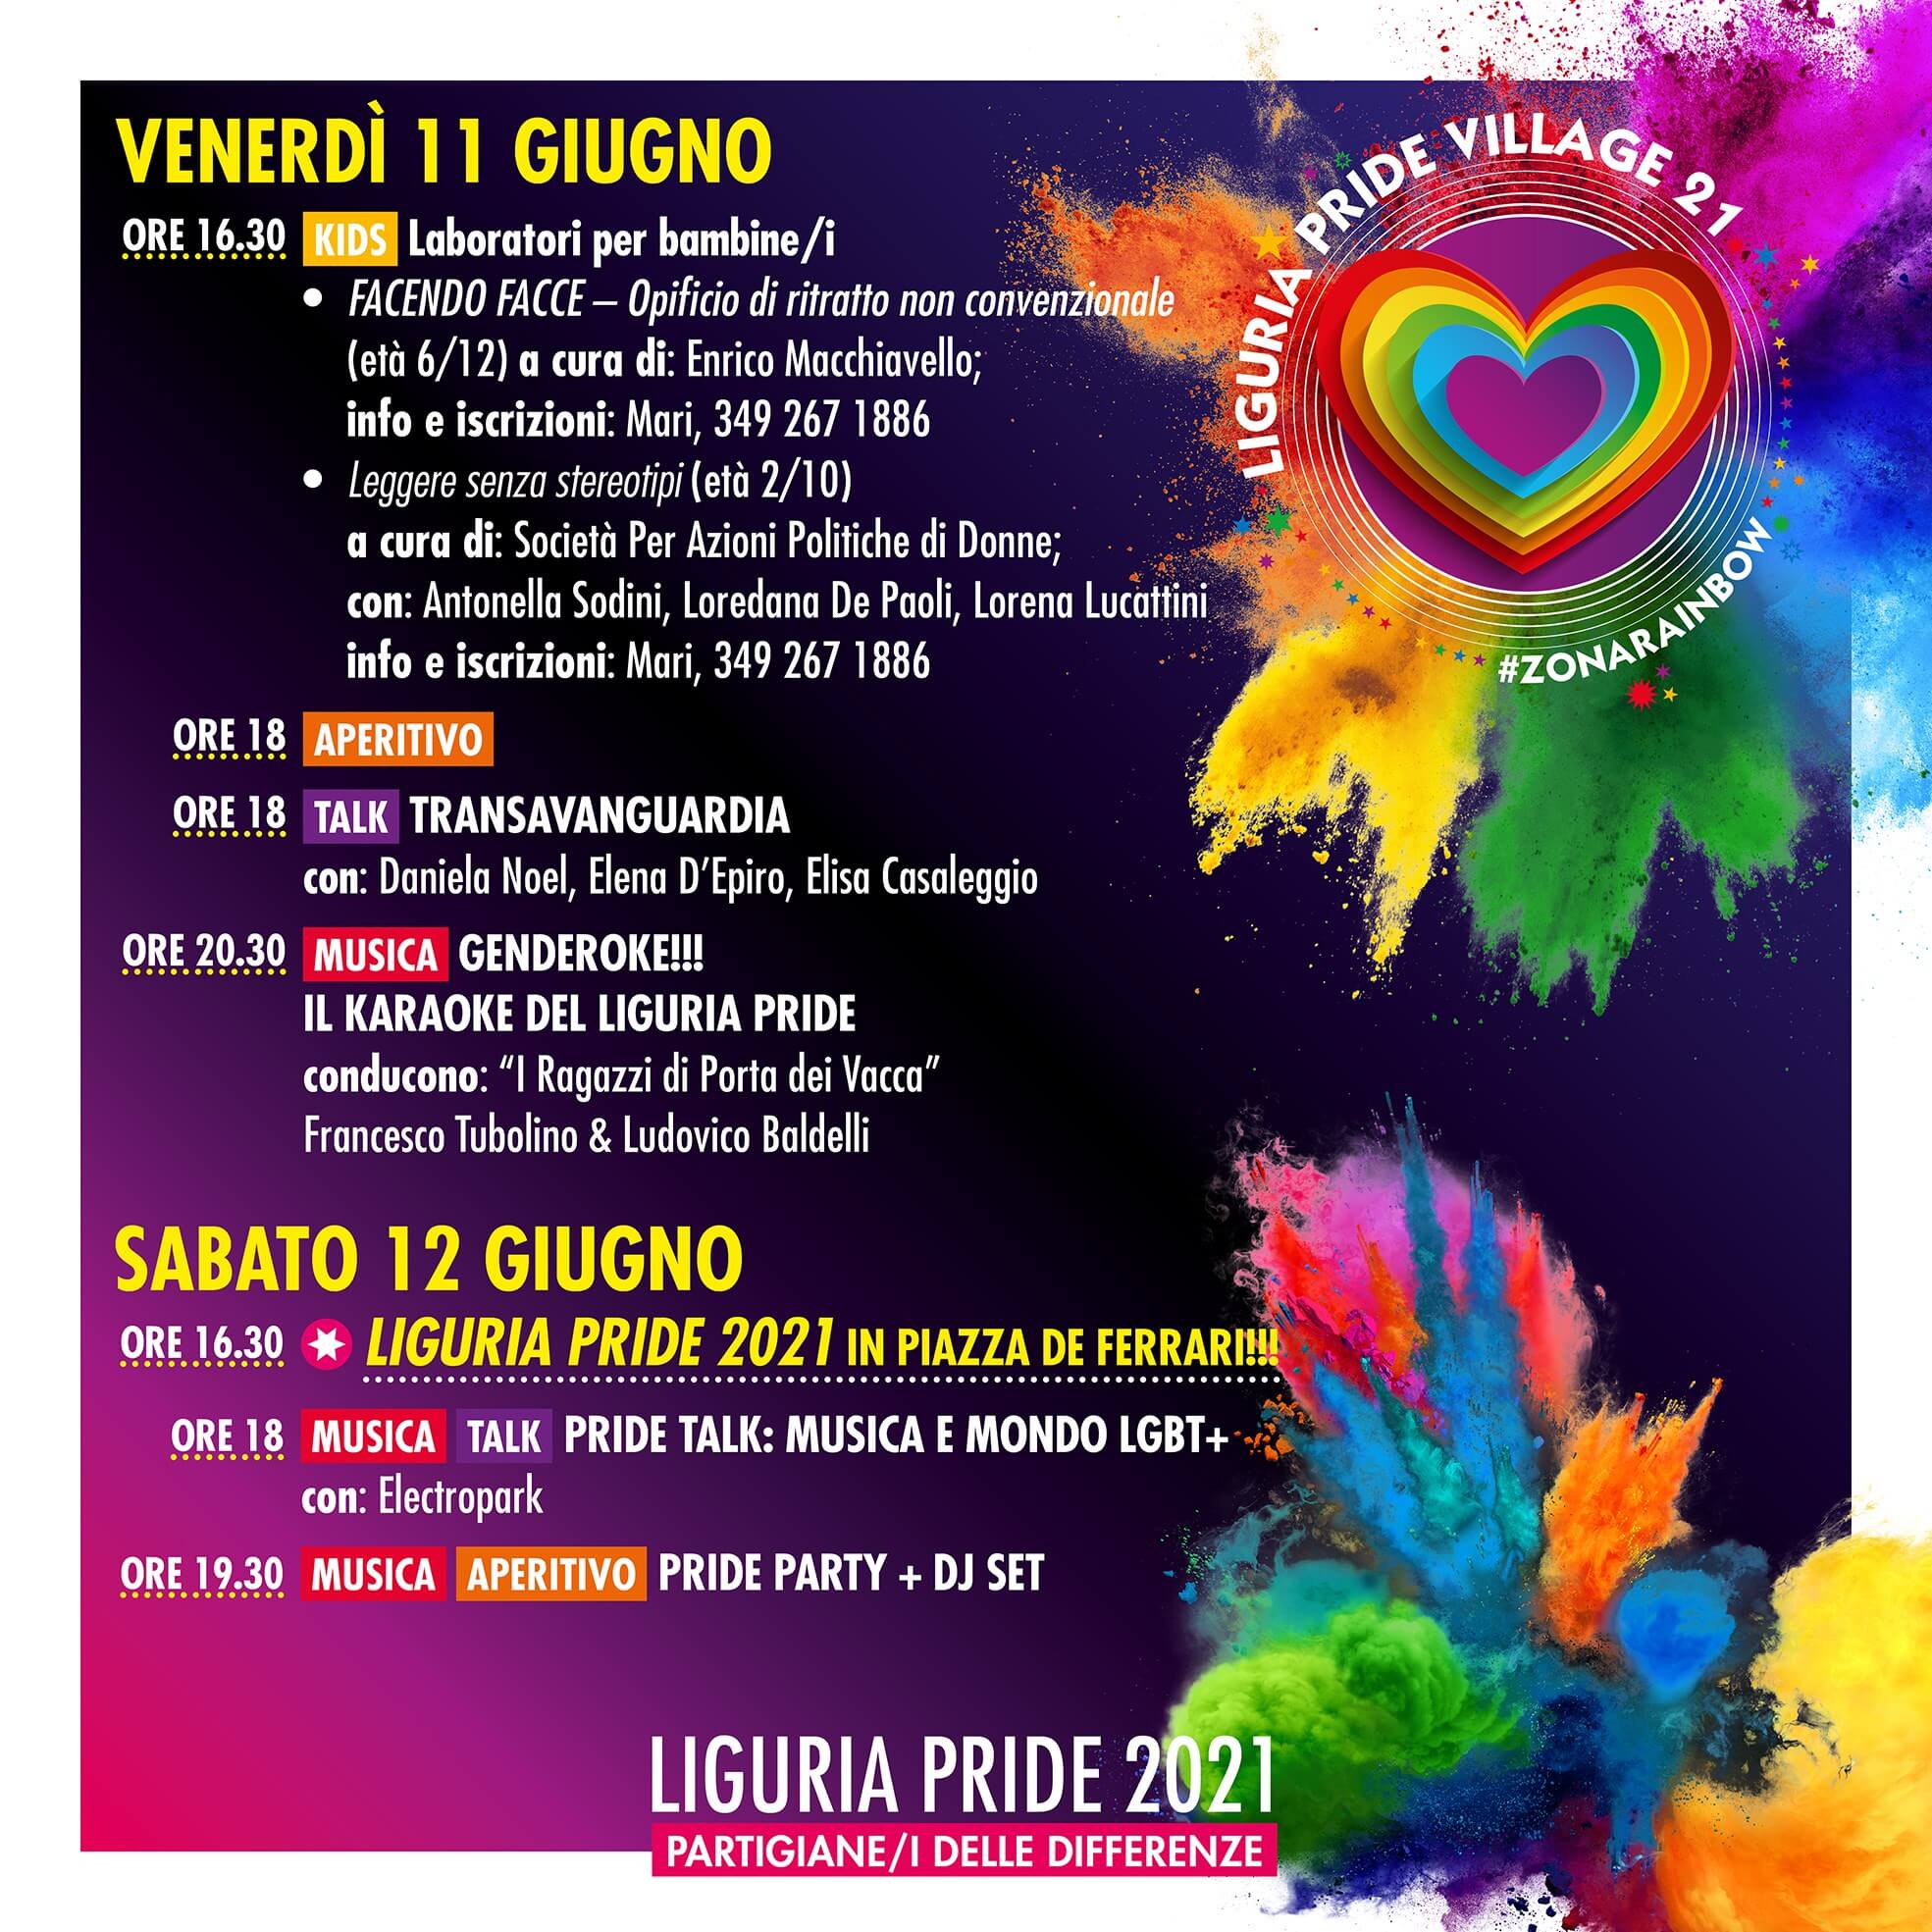 Liguria Pride 2021, tutti a Genova sabato 12 giugno - il programma della settimana - Liguria Pride 2021 tutti a Genova 9 - Gay.it